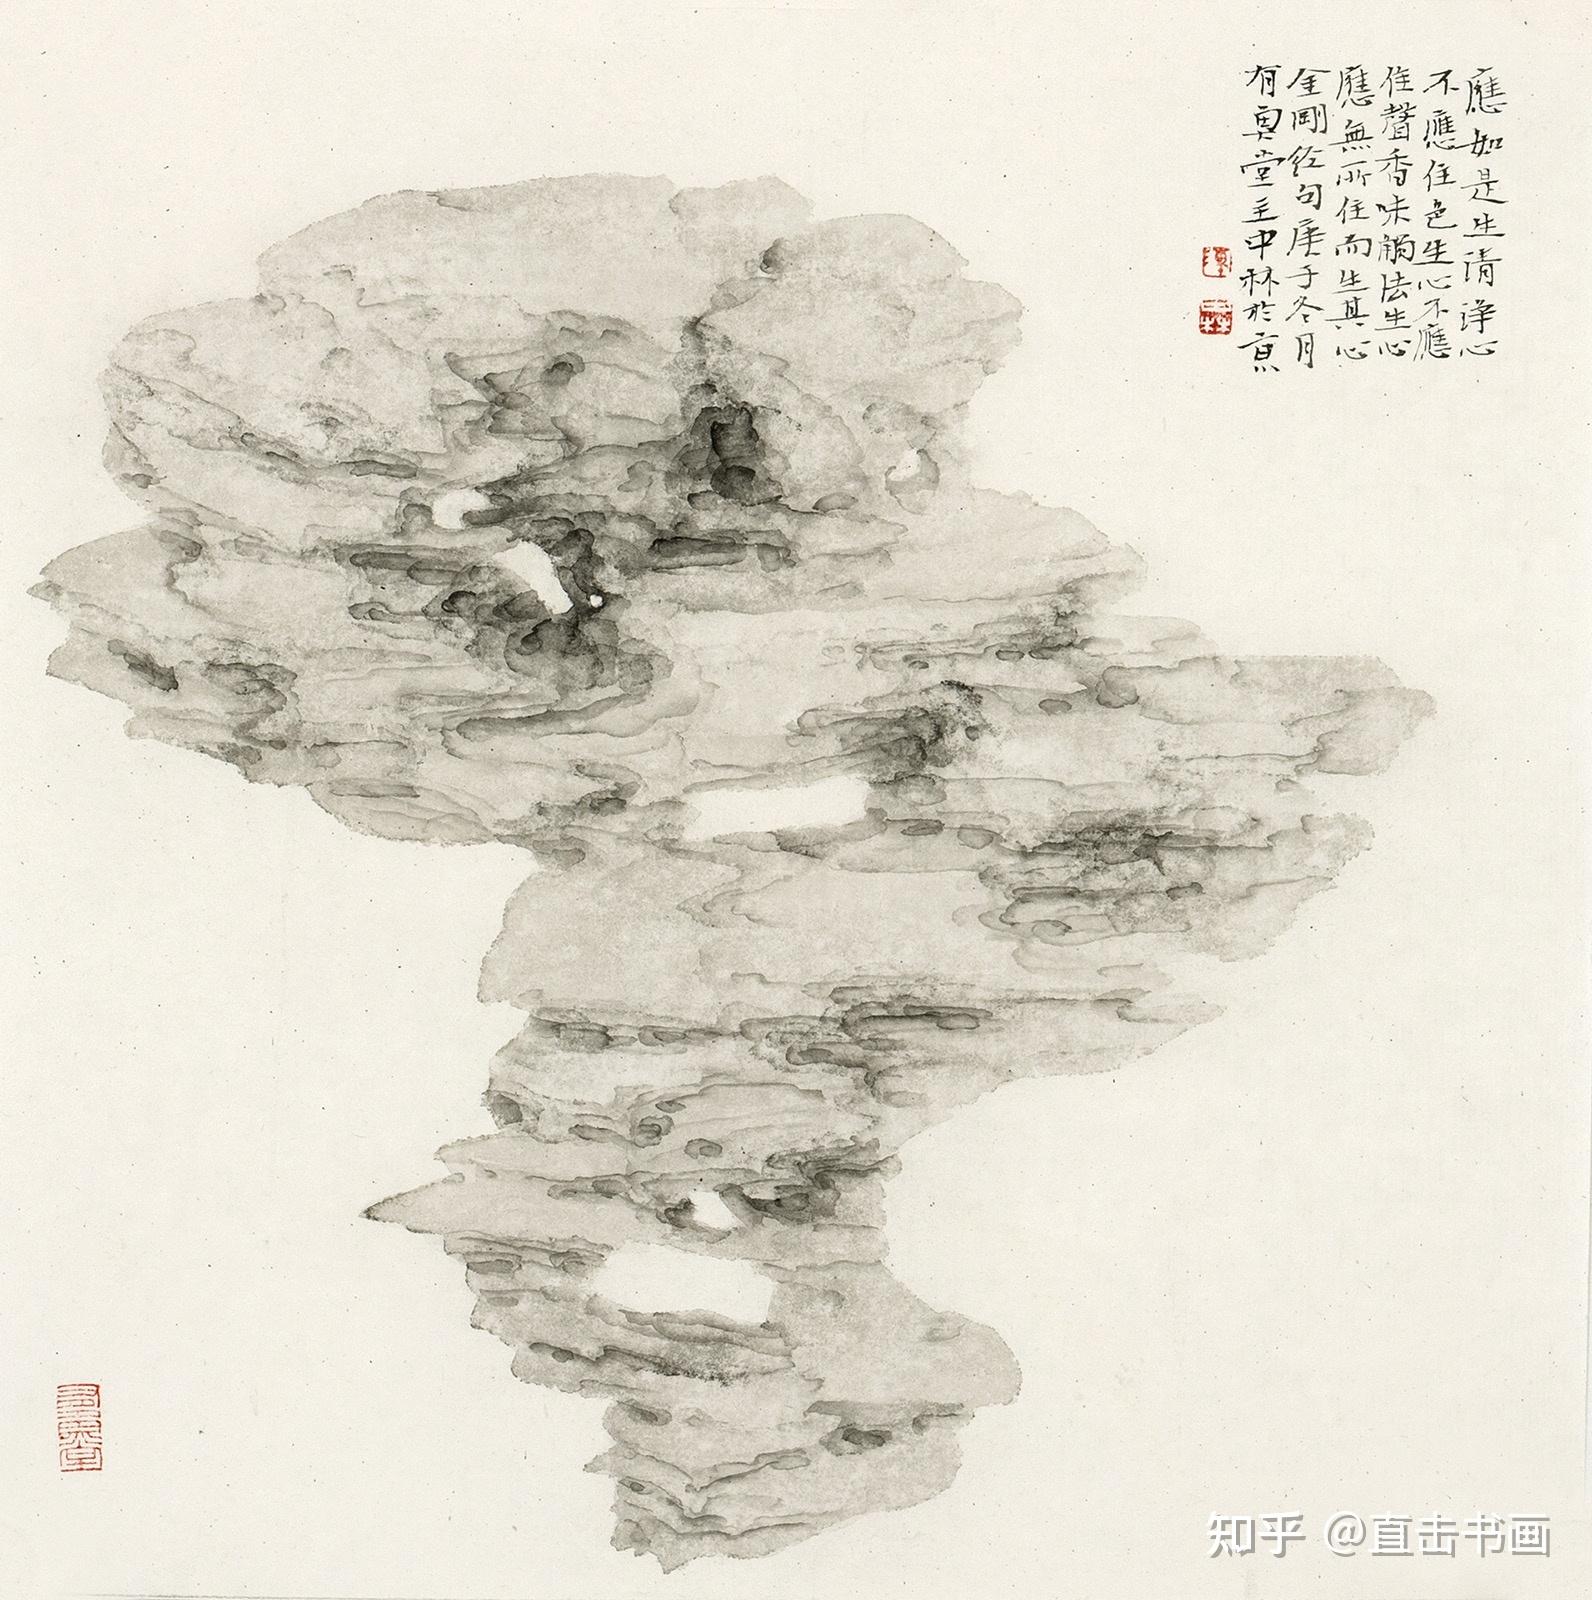 太湖石国画图库图片